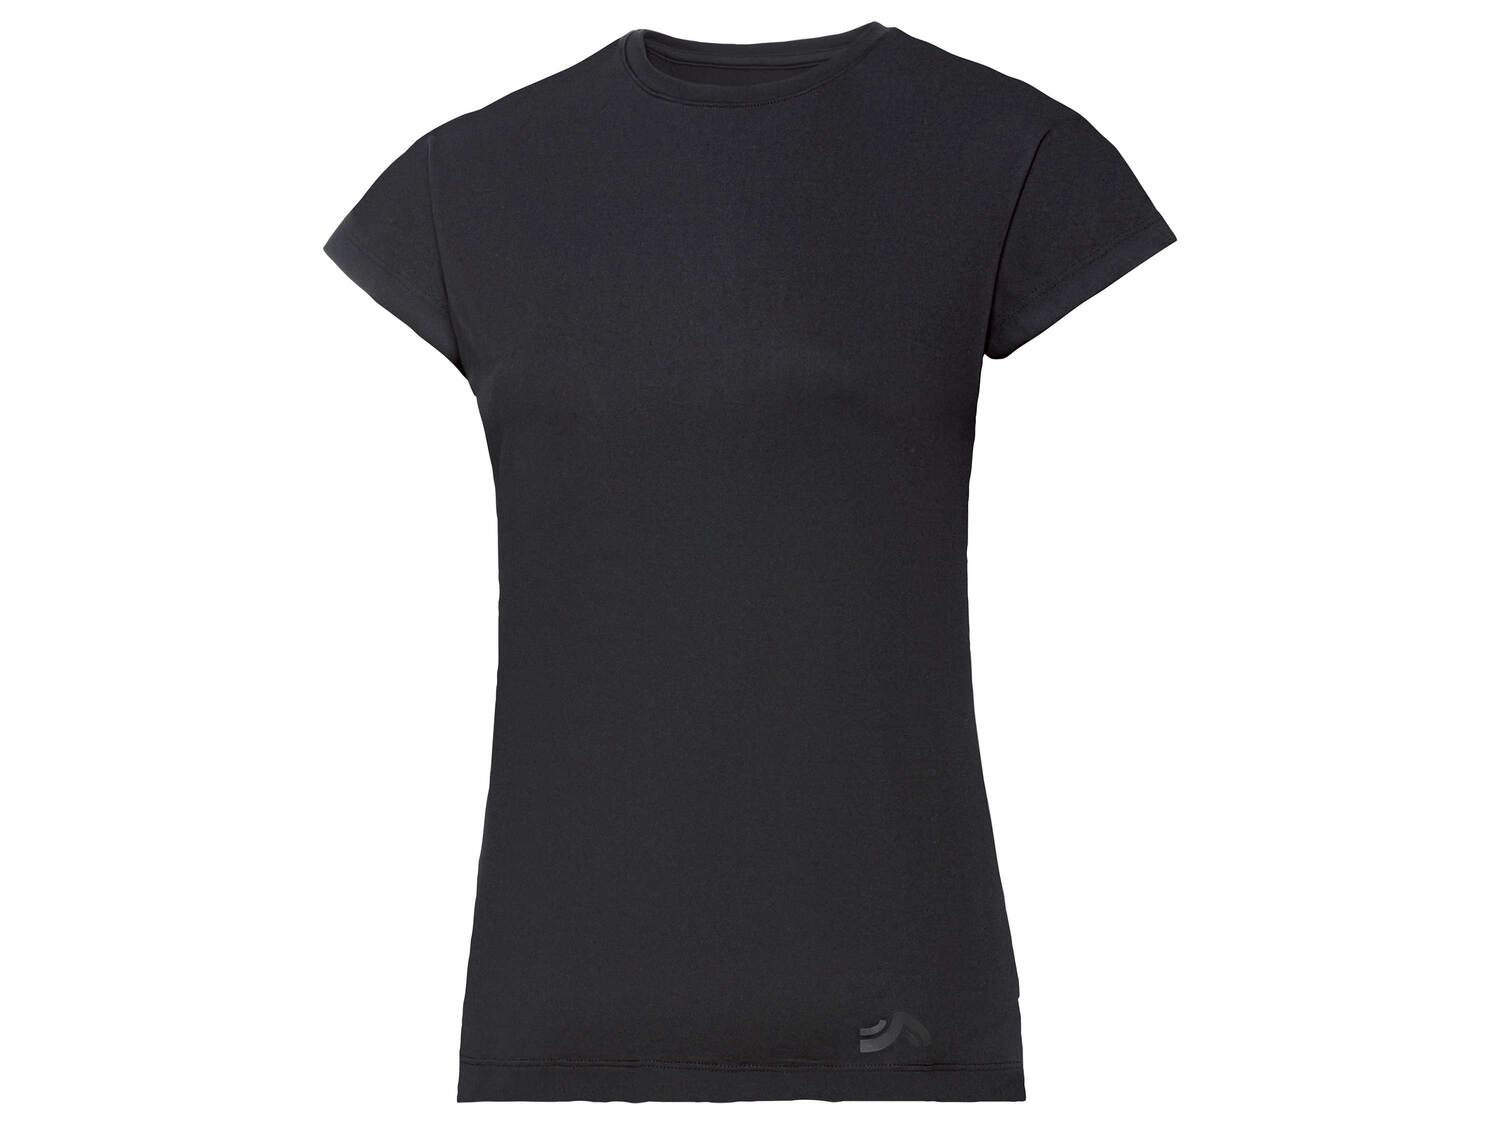 T-shirt technique , le prix 3.99 € 
- Du S au XL selon modèle
- Ex. 91 % polyester ...